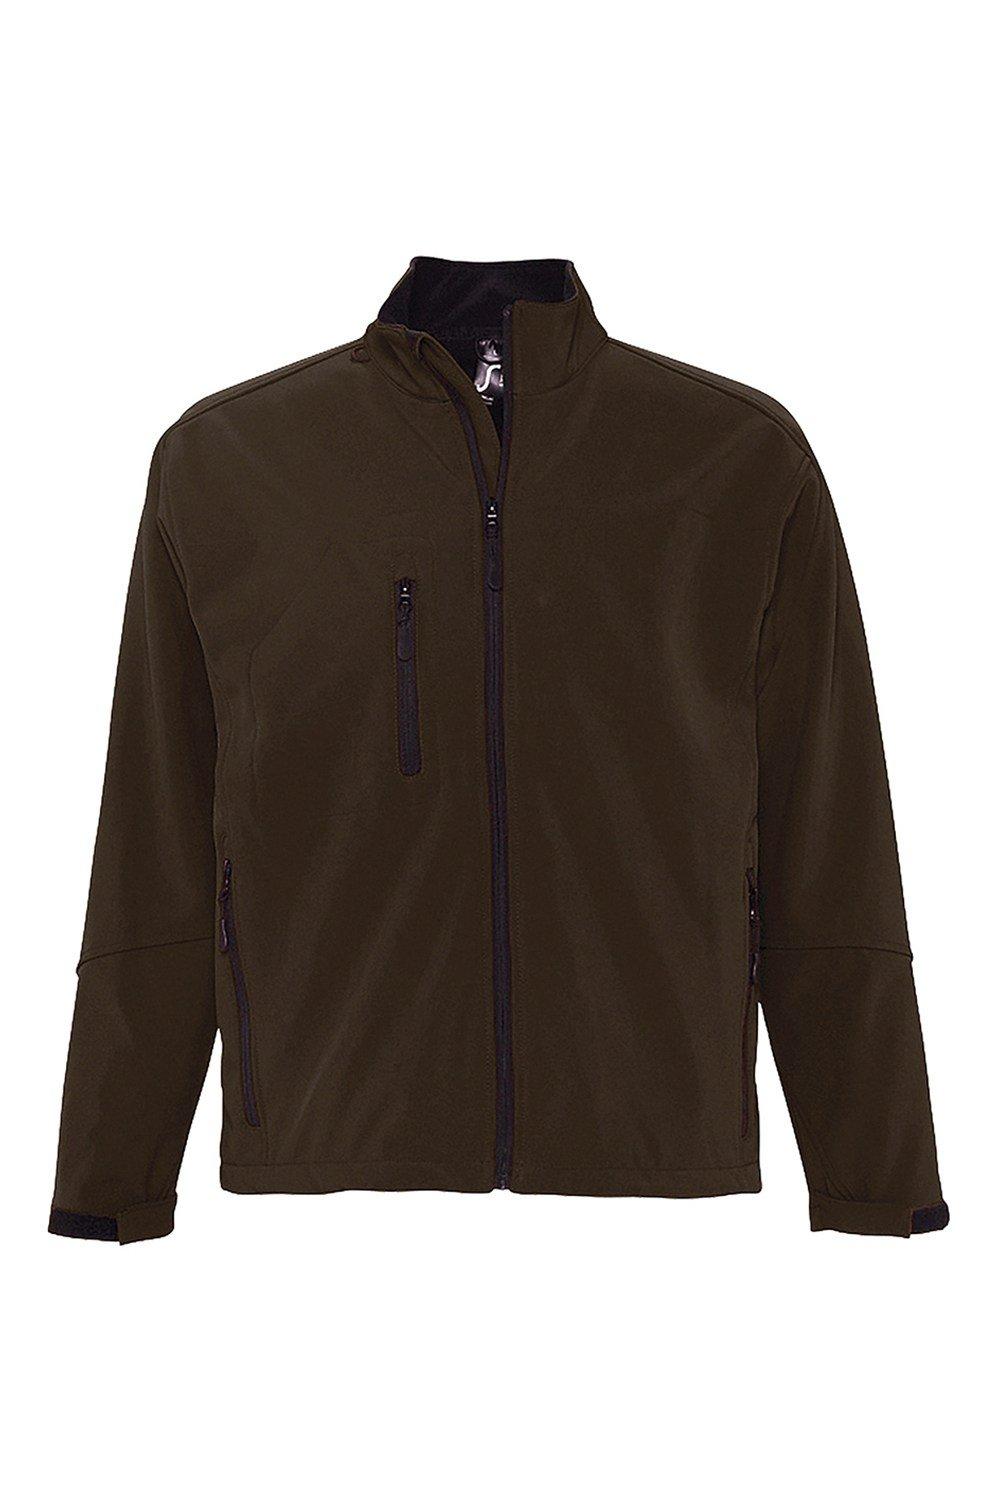 Куртка Relax Soft Shell (дышащая, ветрозащитная и водостойкая) SOL'S, коричневый